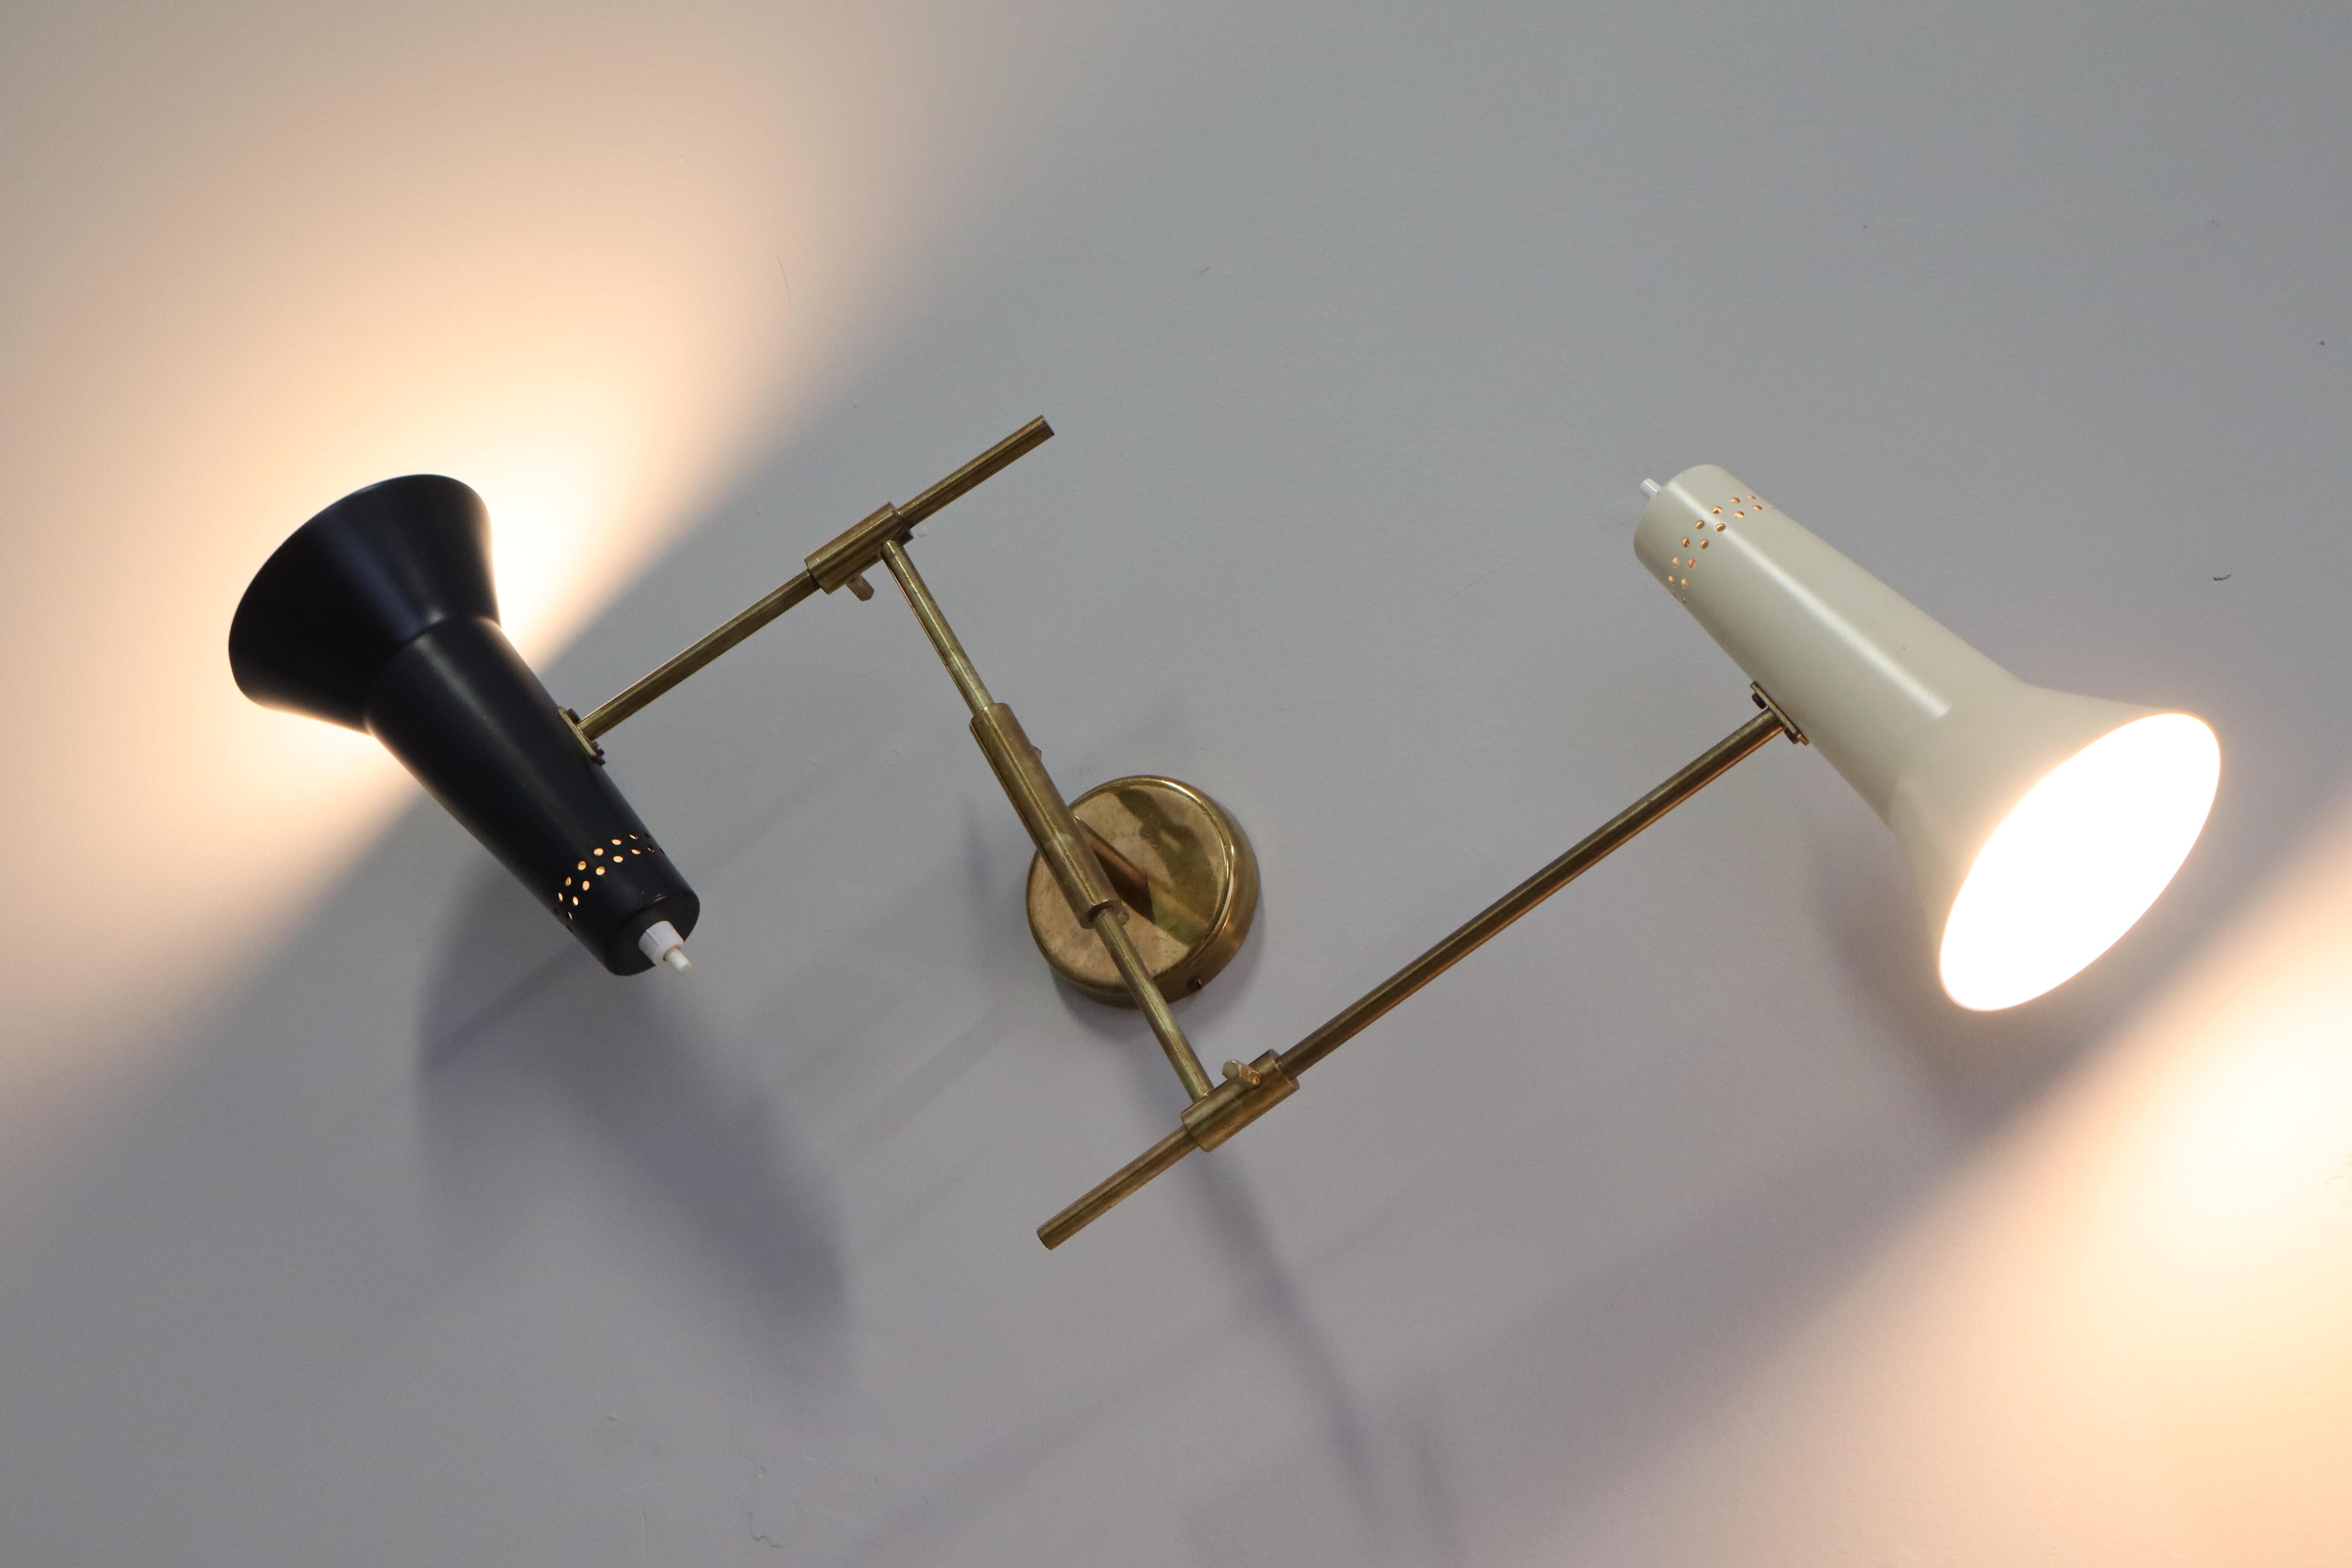 Beeindruckendes Paar Wandlampen Modell 169/2, entworfen von Gino Sarfatti und hergestellt von Arteluce, Italien 1952. 
Diese großen Wandlampen stammen aus einer Serie von Wandlampen, die 1952 von Gino Sarfatti entworfen wurden; dieses Modell mit 2